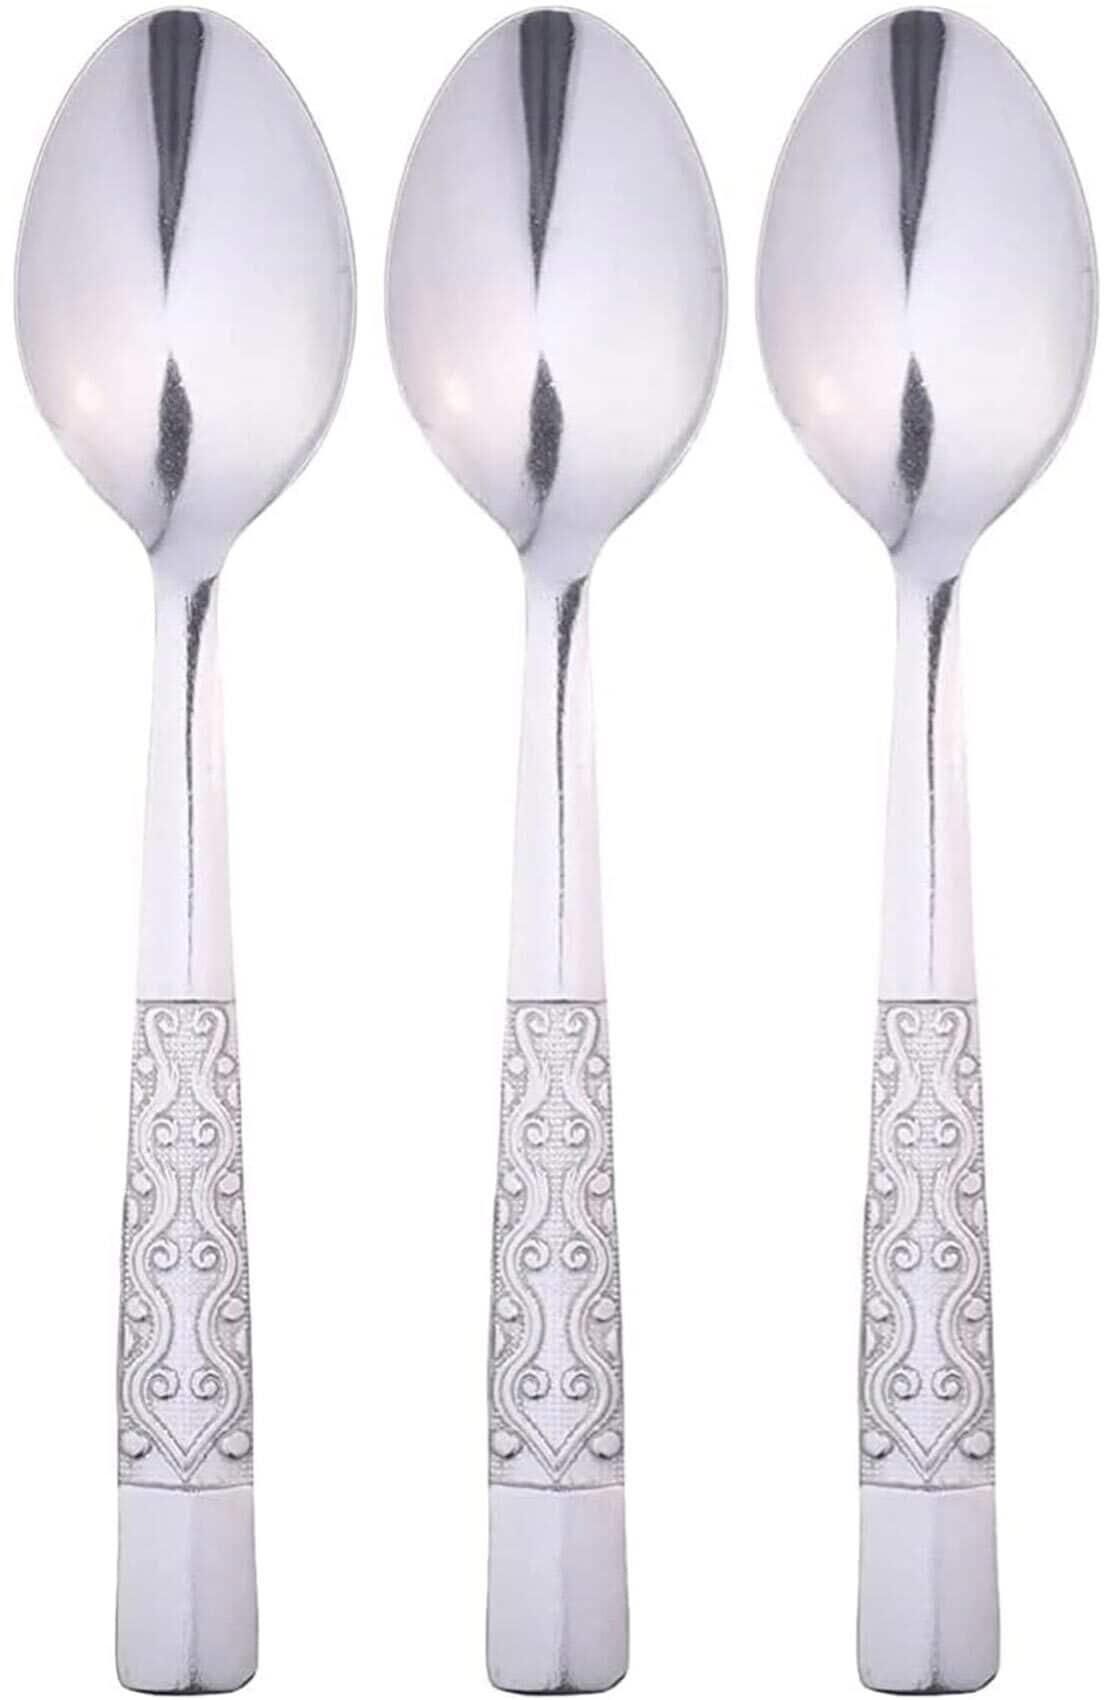 Abou Hamada Mo.511 Tea Spoon - 3 Pieces